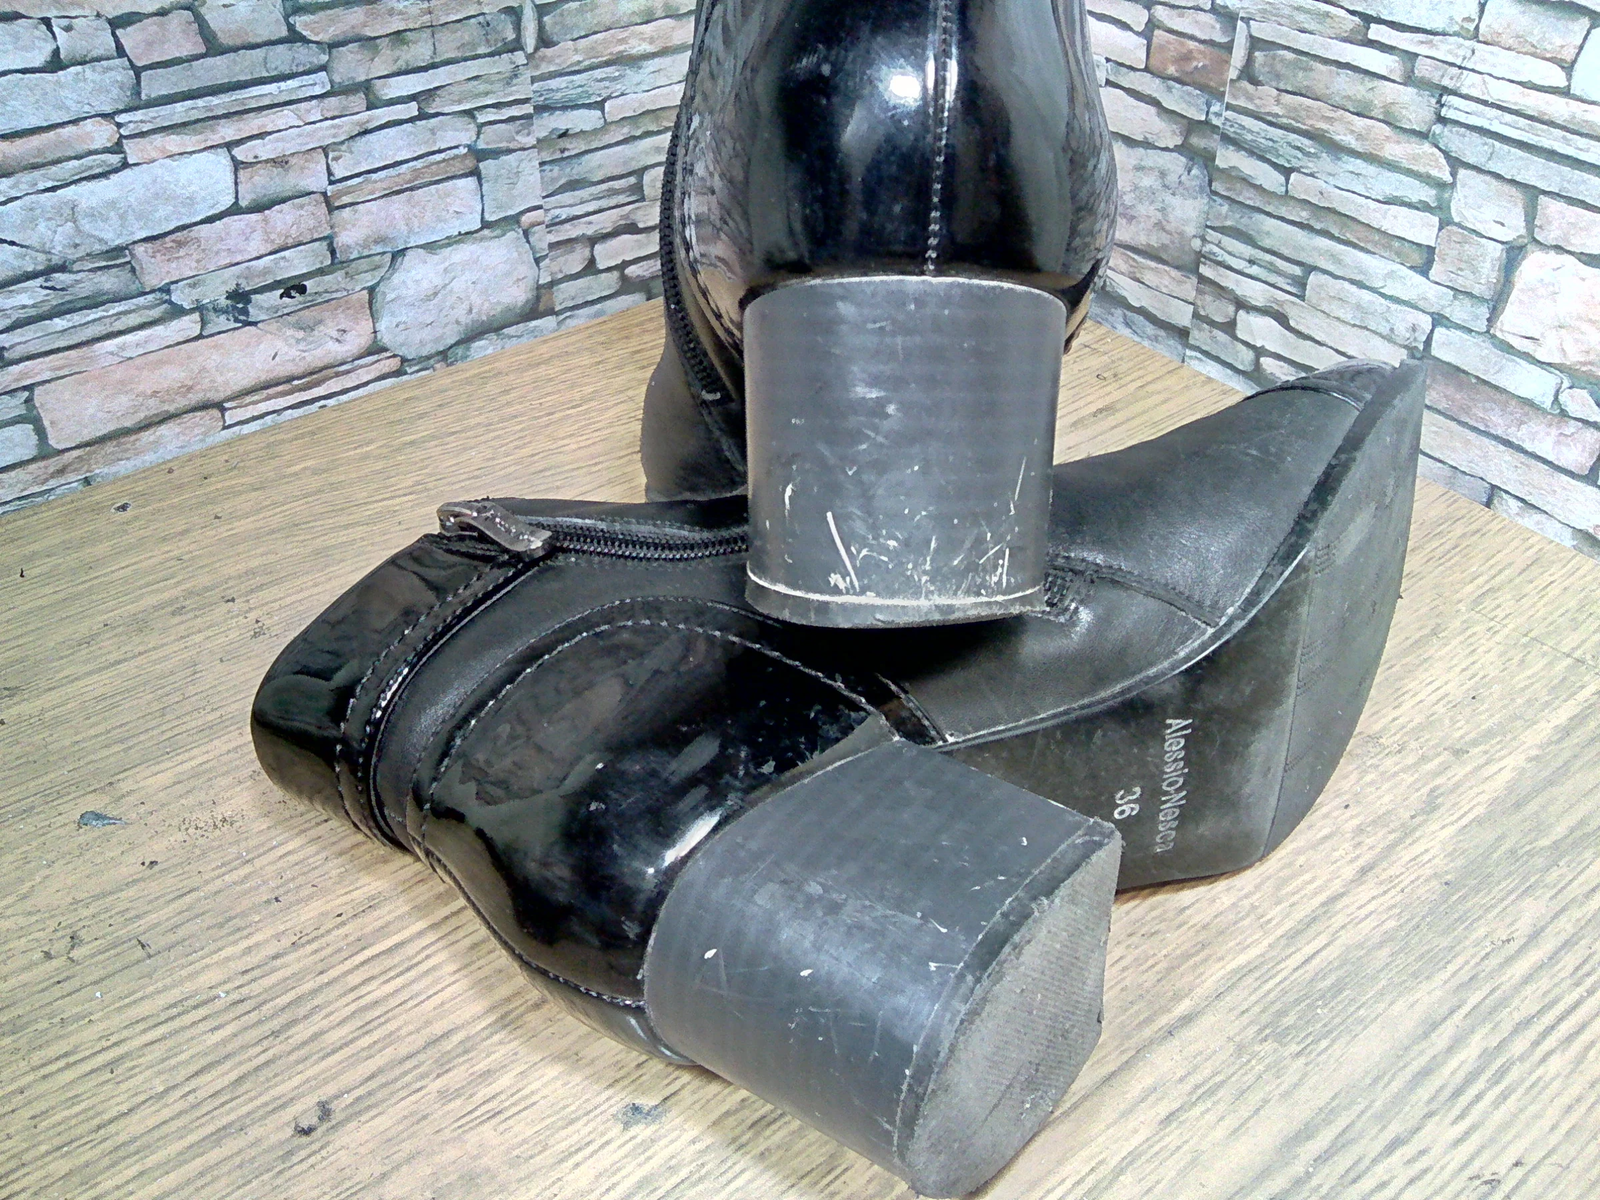 Medium sized heels. - My, Shoe repair, Heels, Work, The photo, Longpost